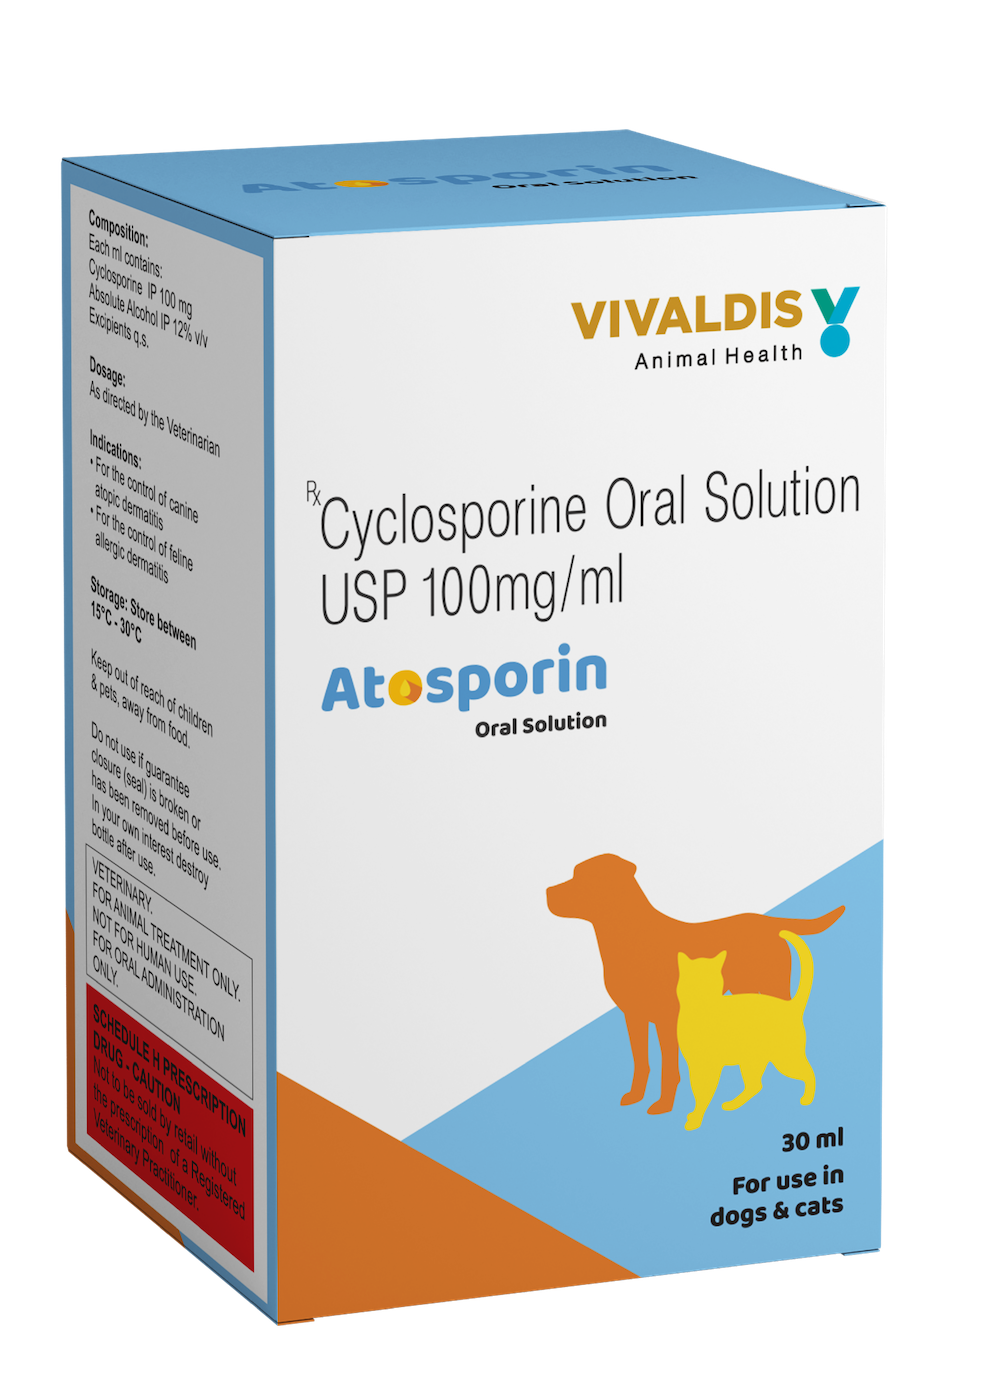 Atosporin oral solution